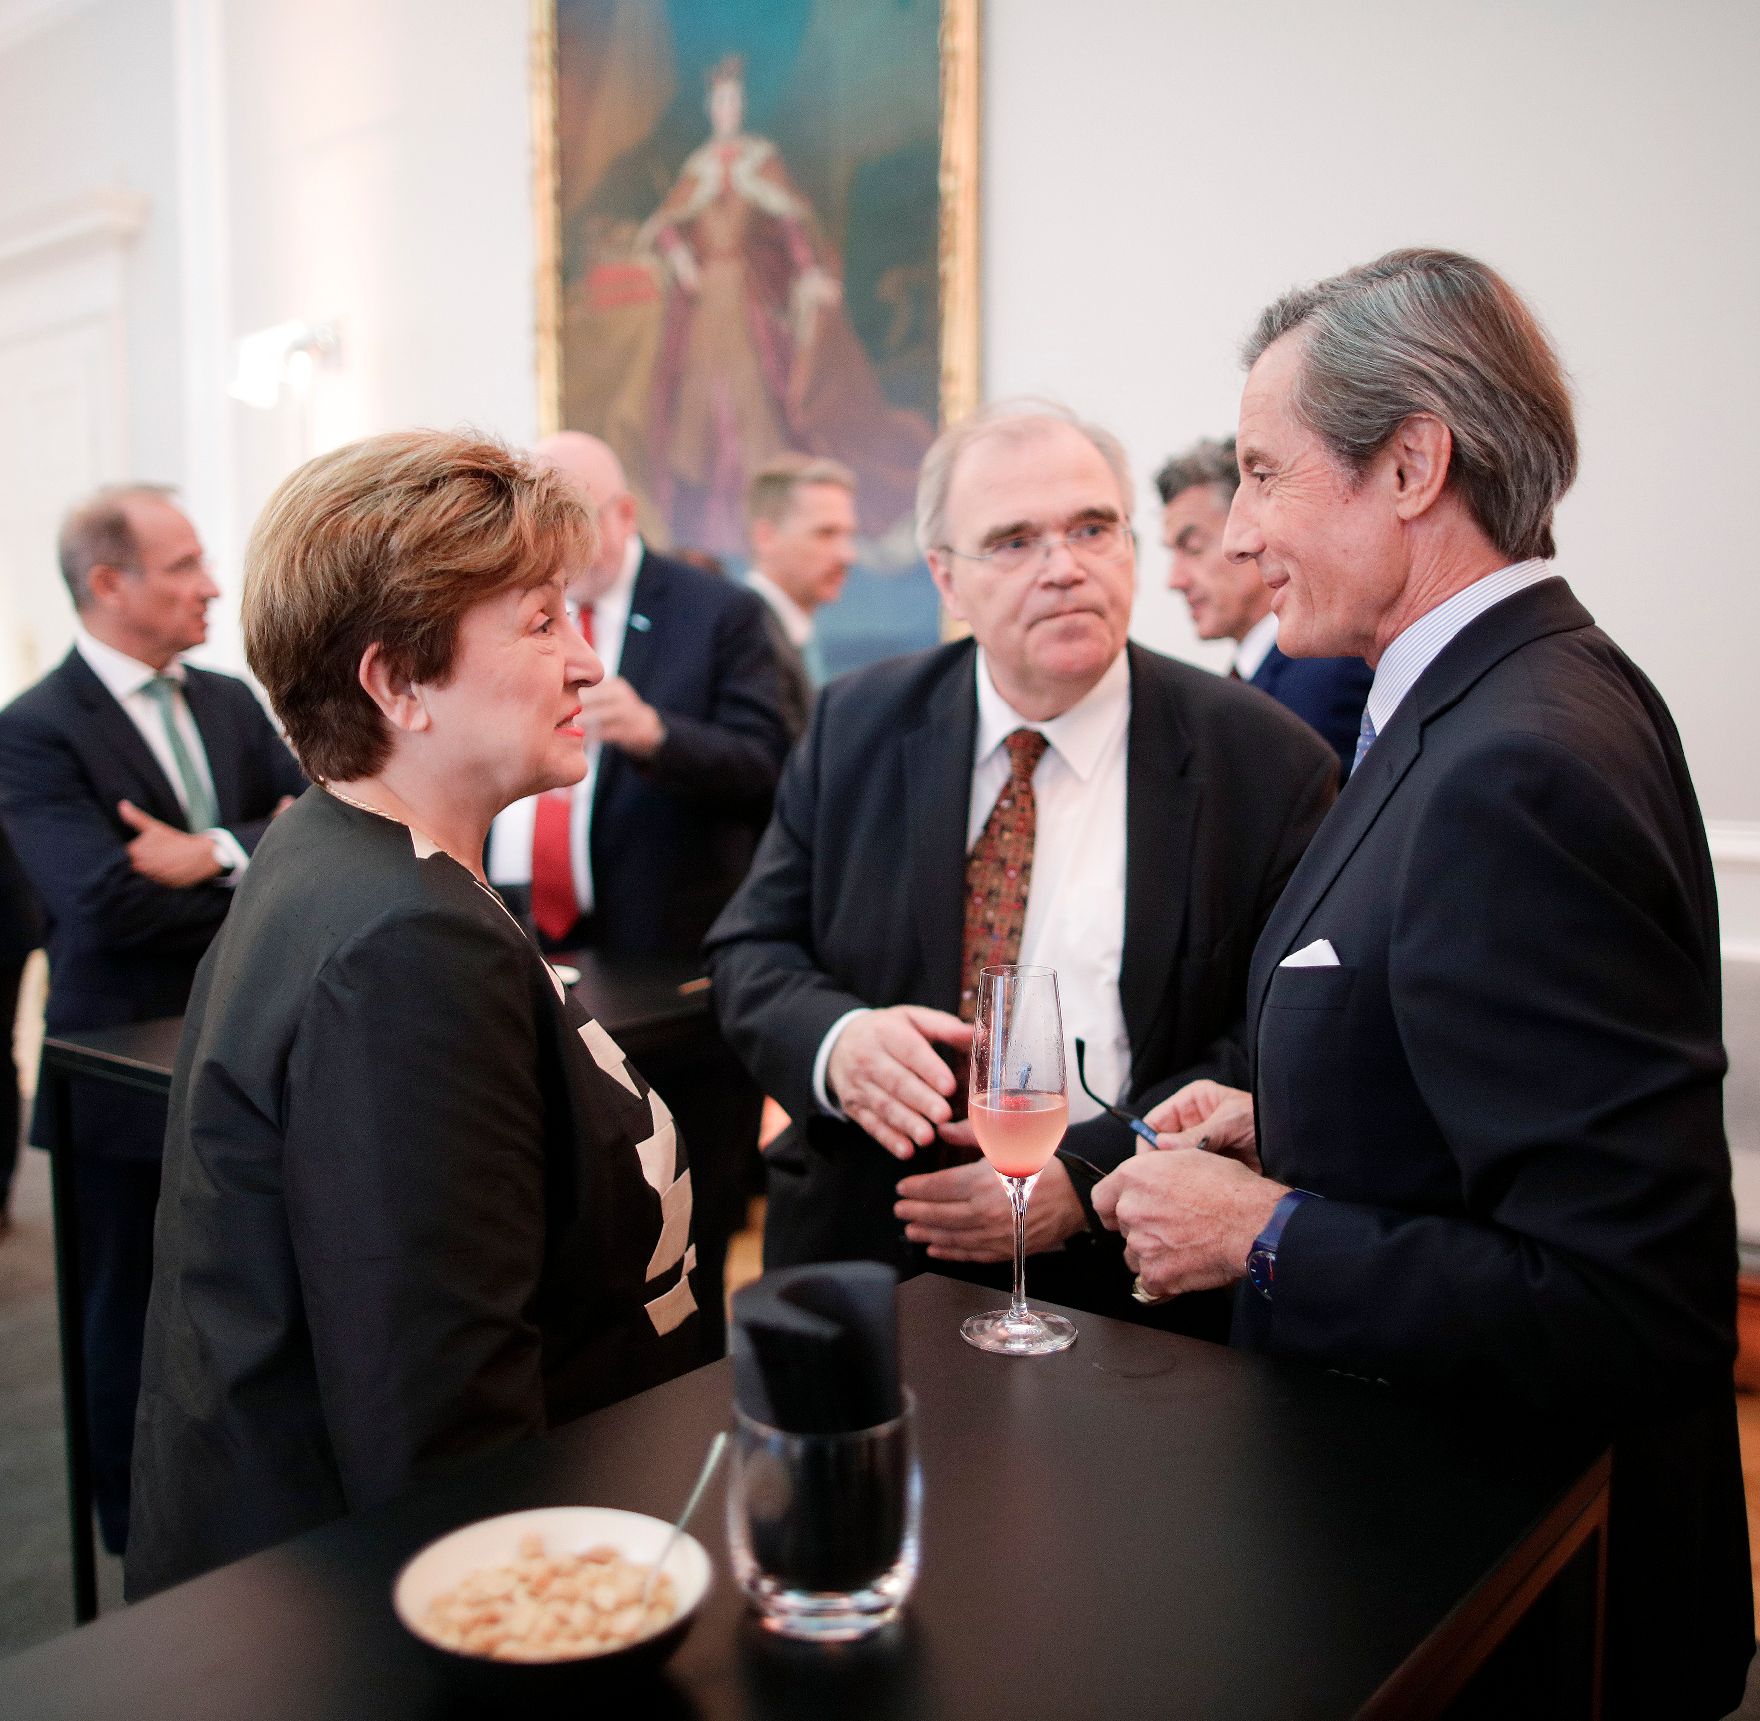 Am 27. Mai 2019 fand anlässlich des R20 Austrian World Summit einen Empfang im Bundeskanzleramt statt.